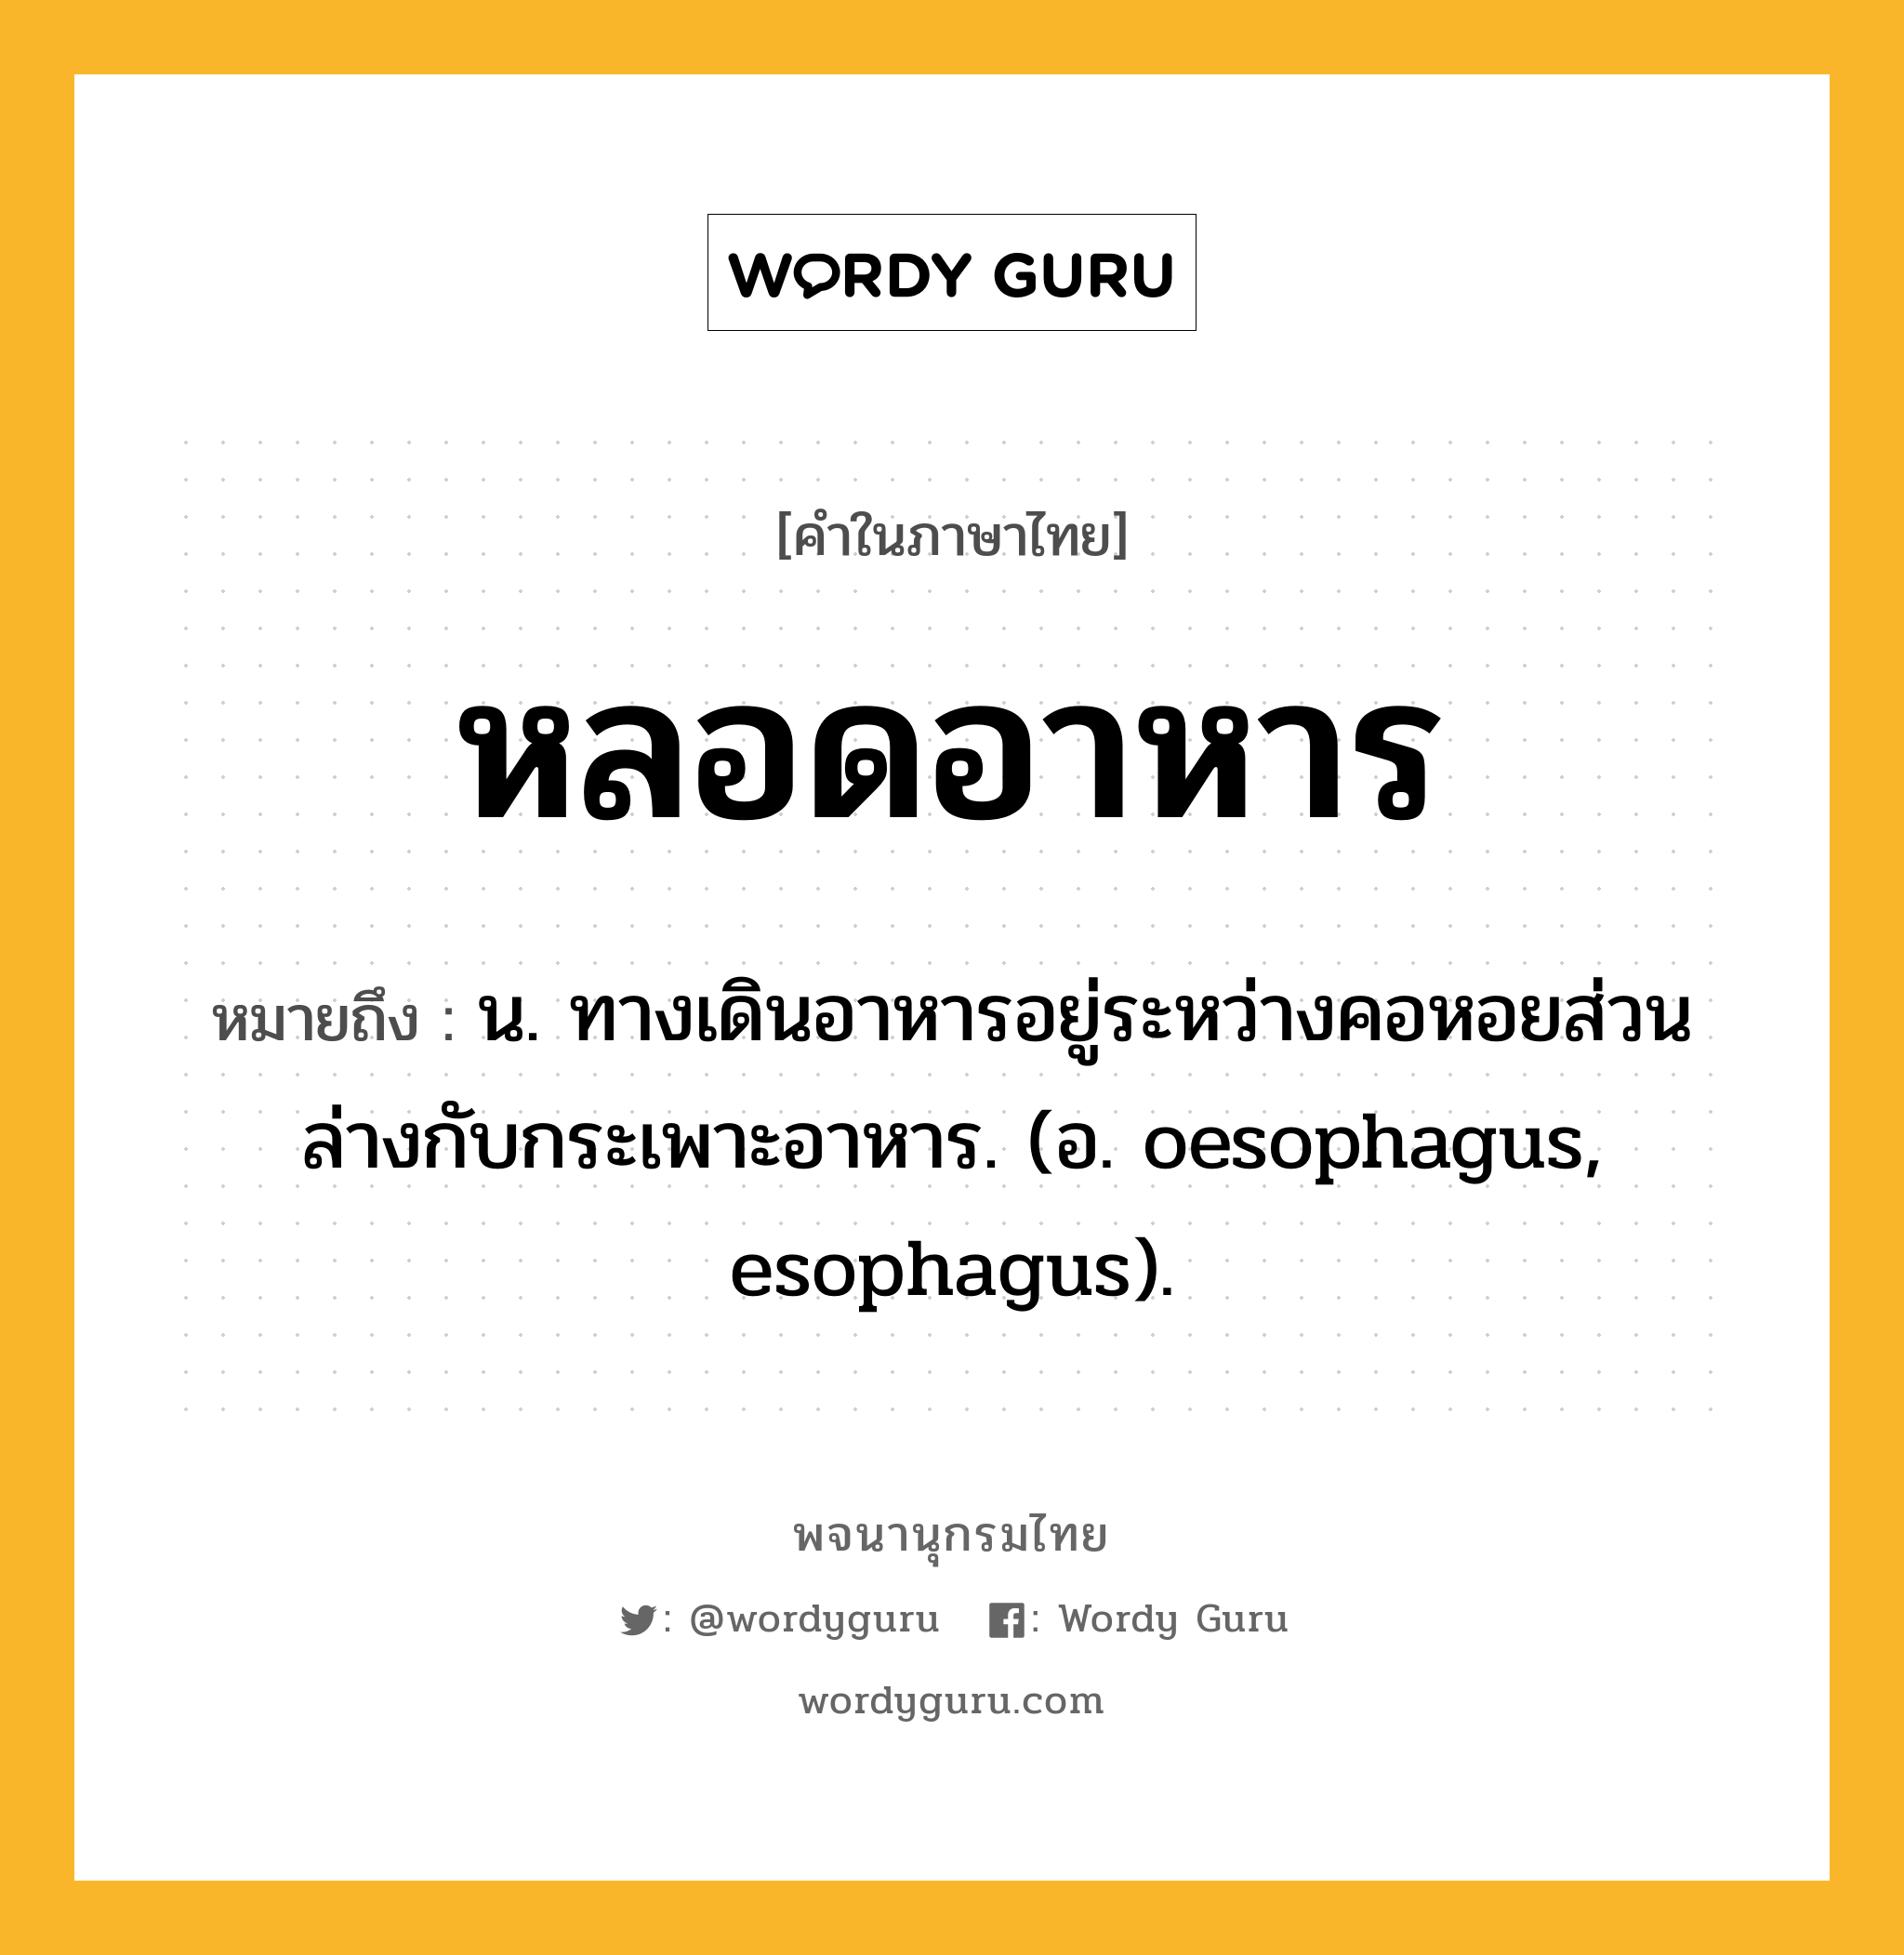 หลอดอาหาร หมายถึงอะไร?, คำในภาษาไทย หลอดอาหาร หมายถึง น. ทางเดินอาหารอยู่ระหว่างคอหอยส่วนล่างกับกระเพาะอาหาร. (อ. oesophagus, esophagus).